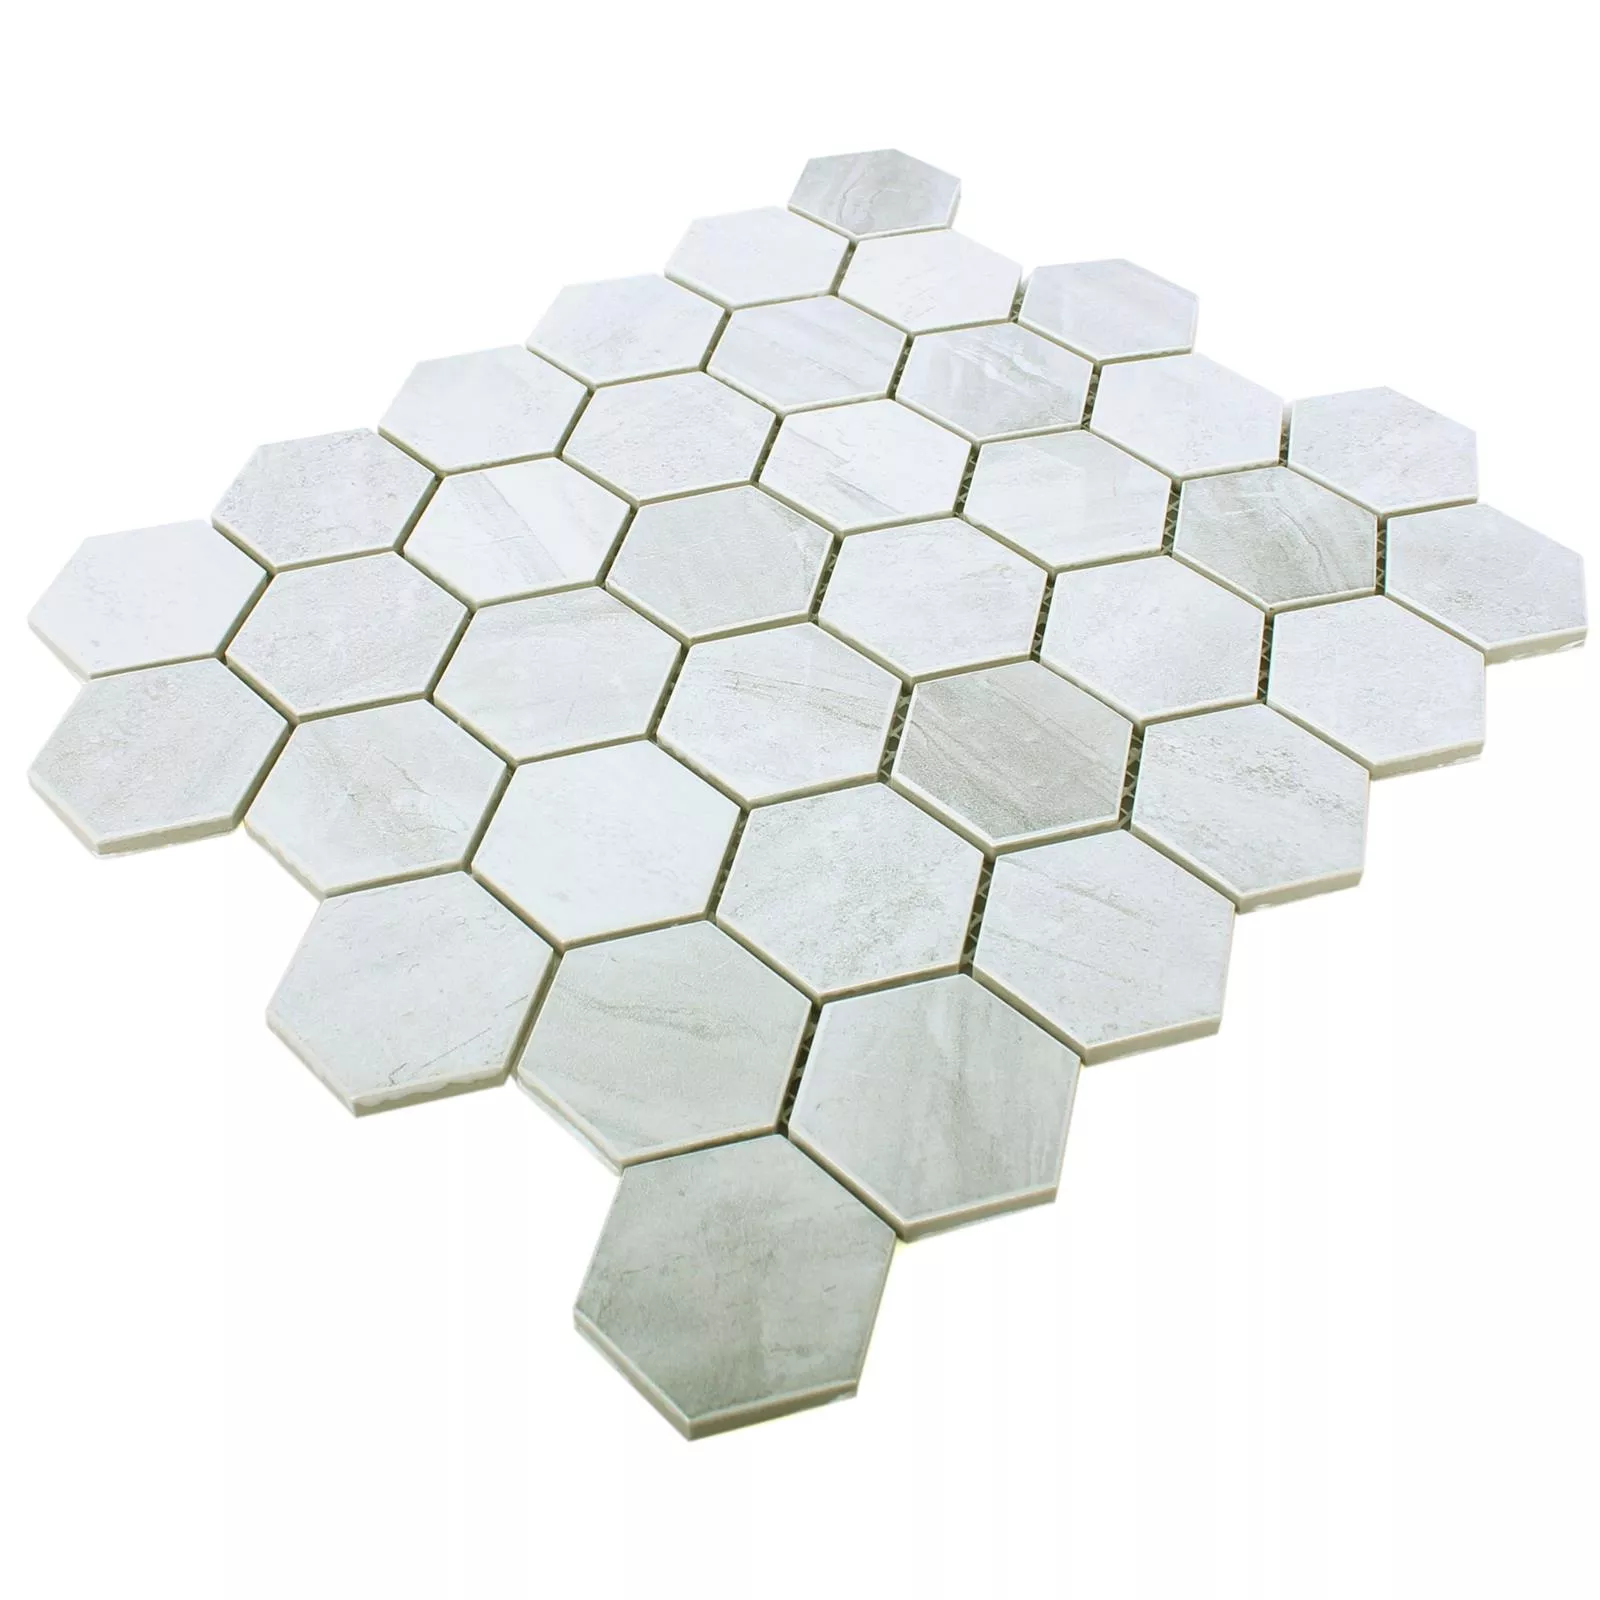 Muestra Cerámica Aspecto De Concreto Azulejos De Mosaico Shepherd Hexagonales Gris